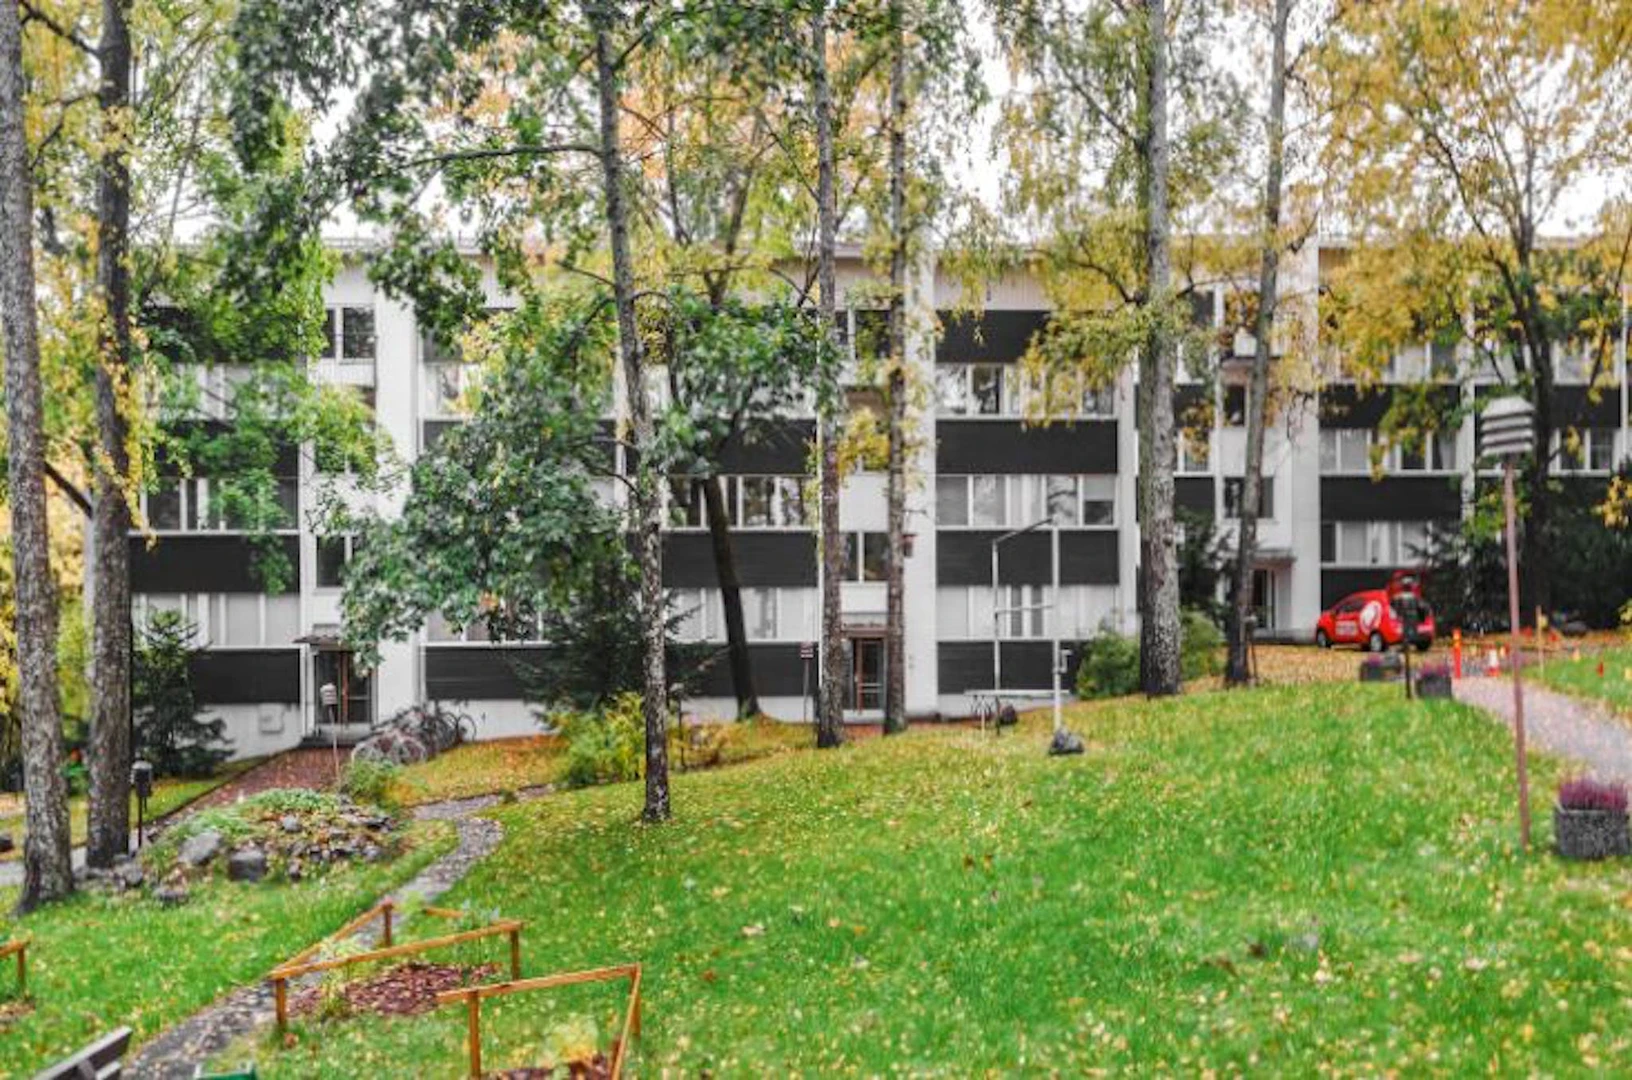 Appartement moderne et lumineux à Espoo